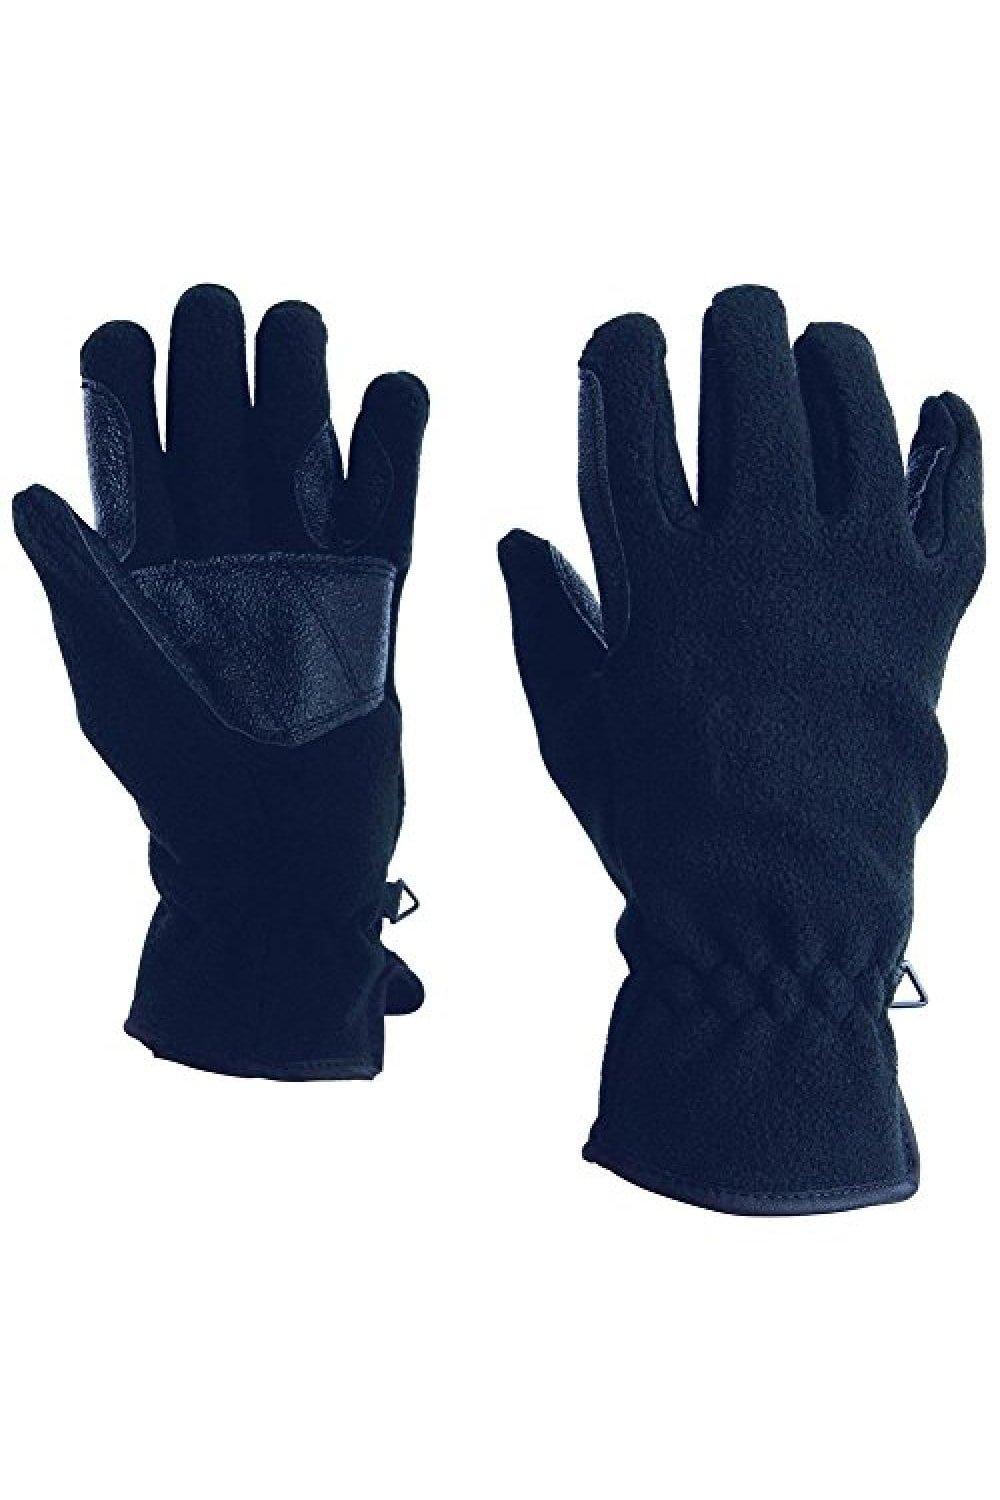 Флисовые перчатки для верховой езды Polar Dublin, темно-синий цена и фото